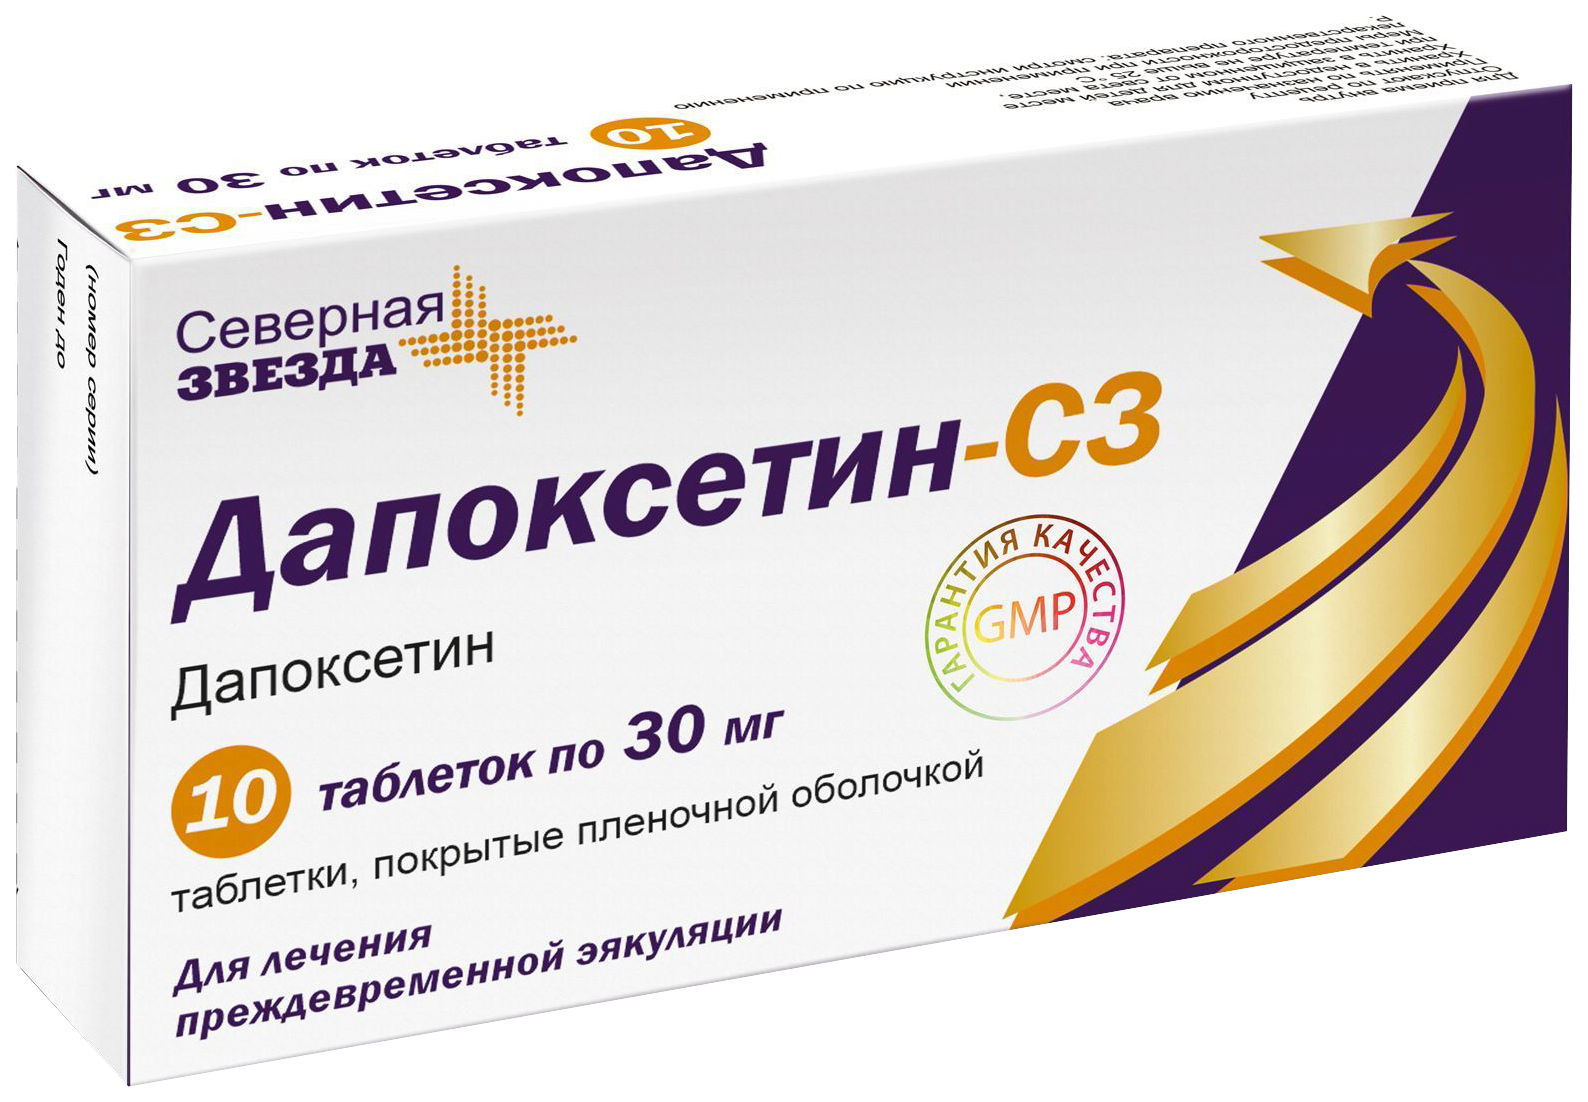 Дапоксетин-СЗ таблетки 30 мг 10 шт., Северная Звезда  - купить со скидкой